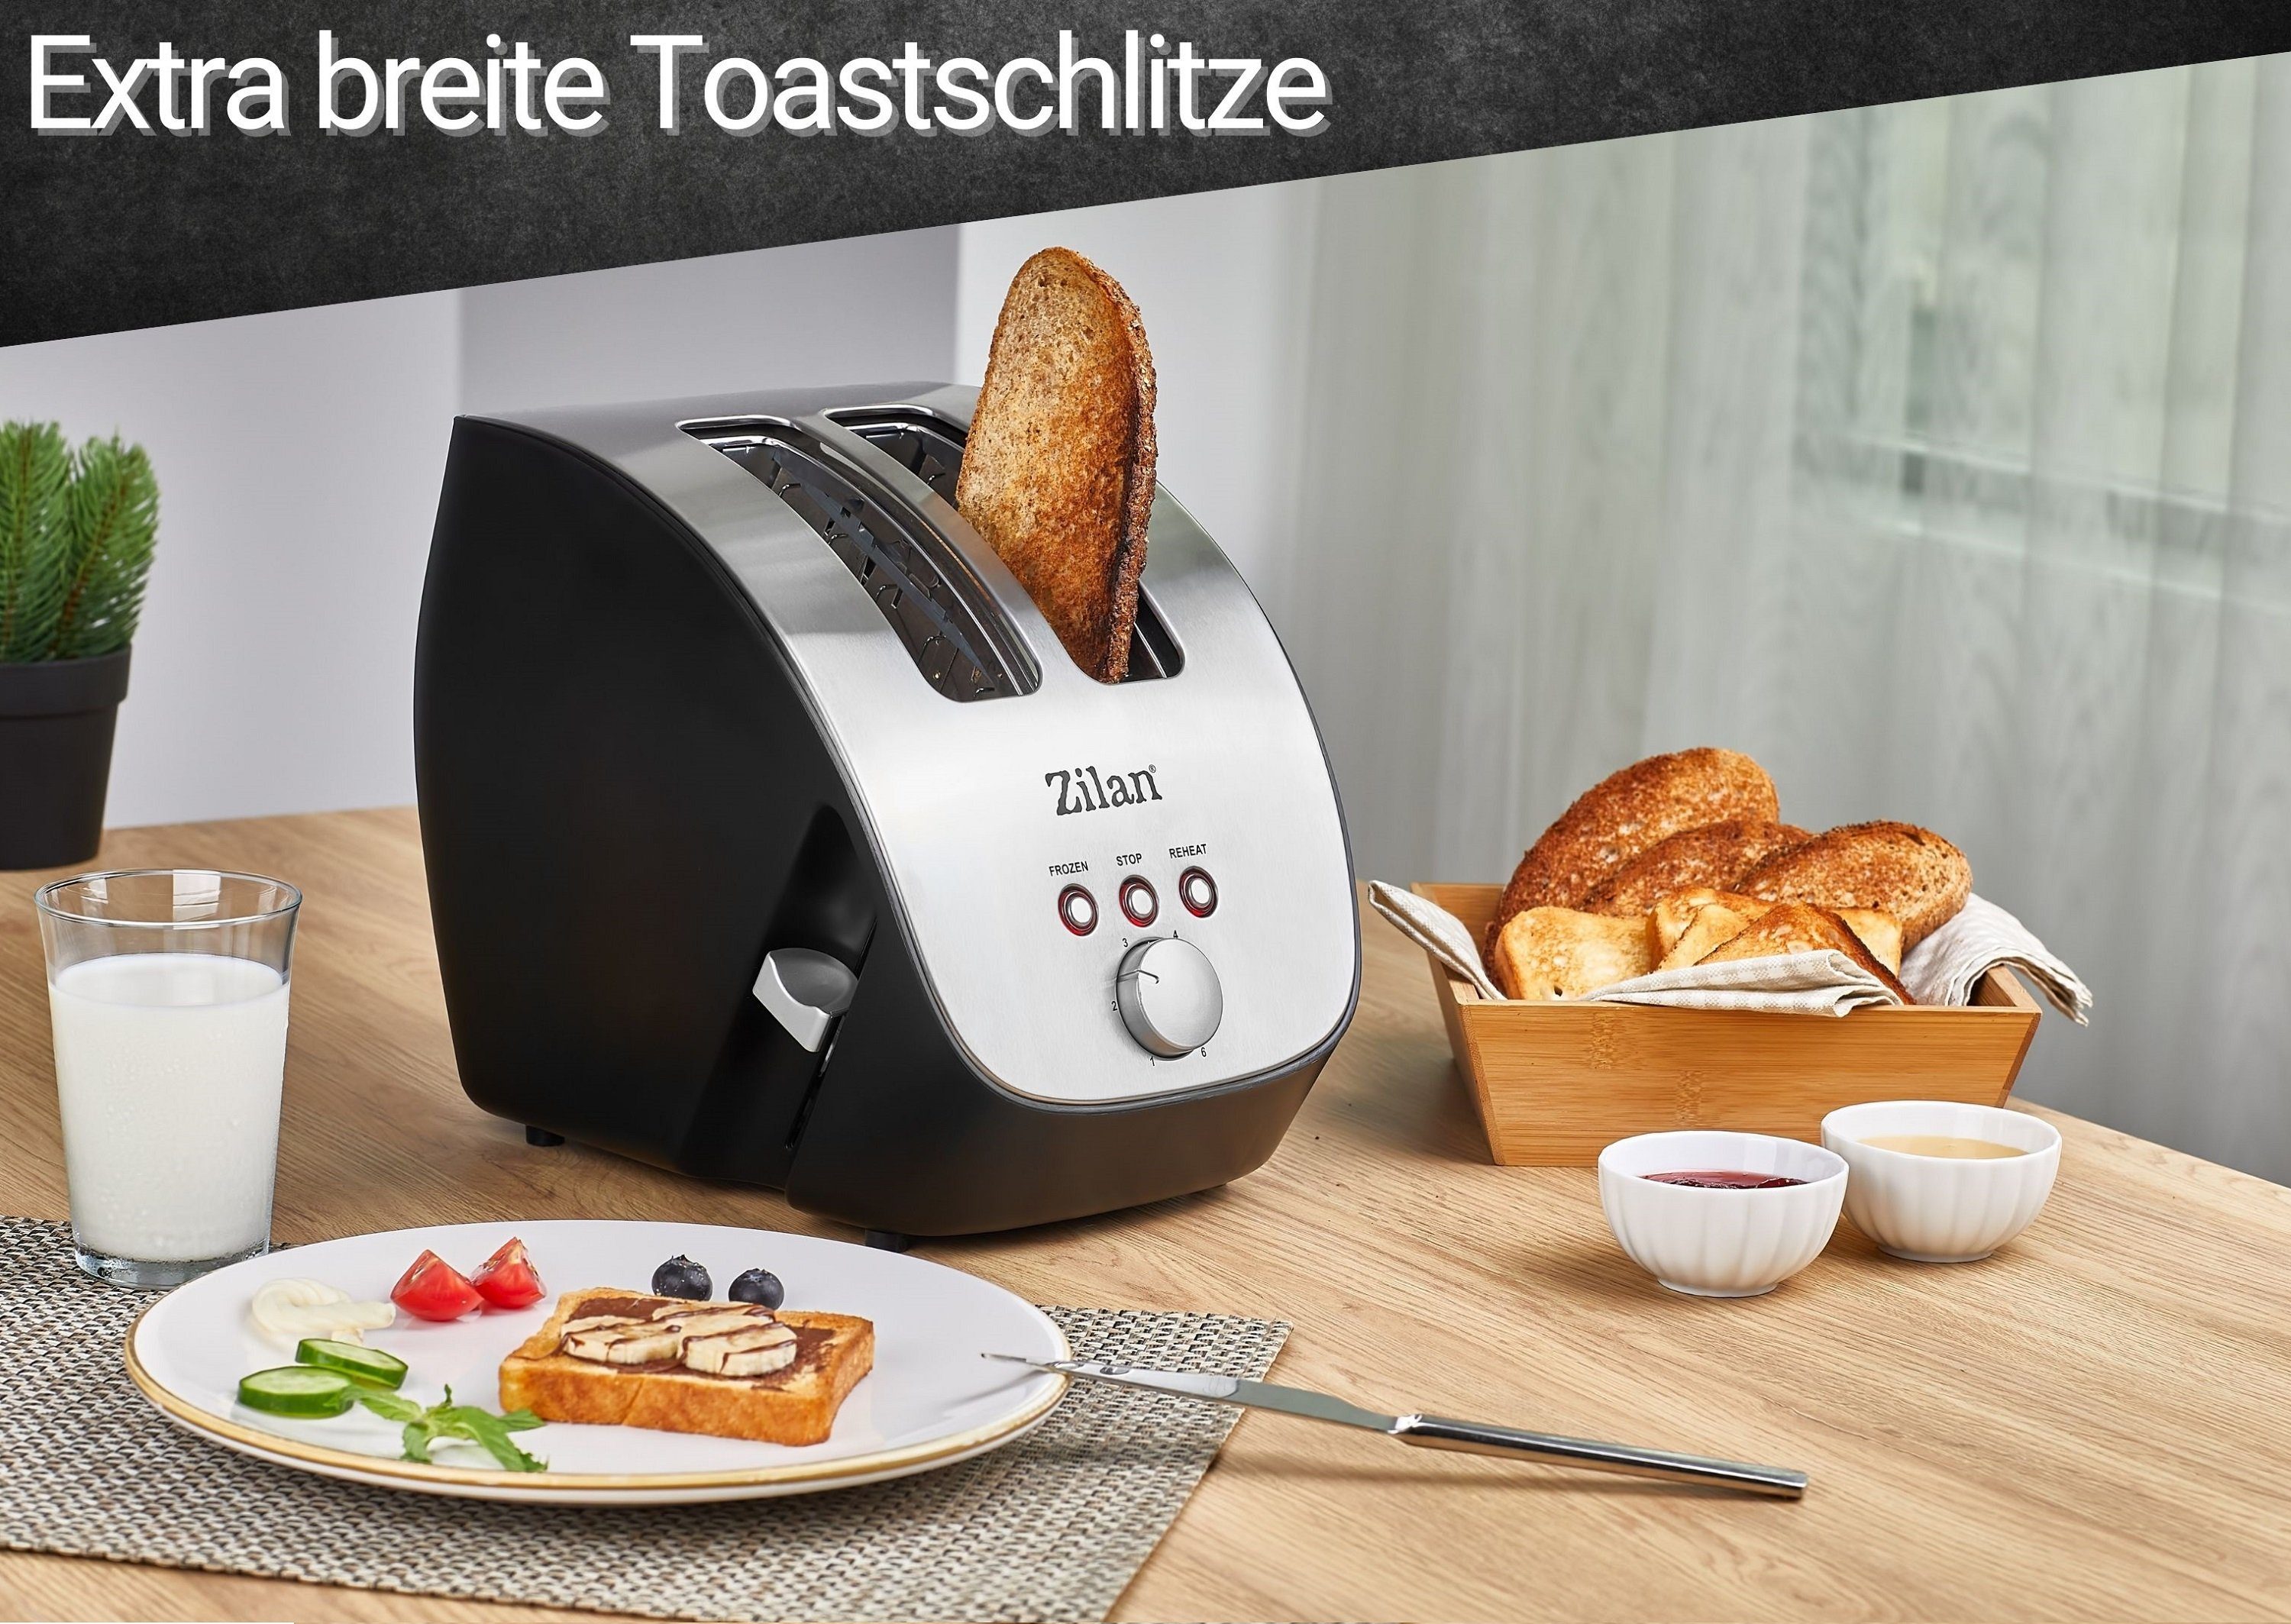 Zilan Toaster für Gehäuse 1000 Edelstahl 2 W, große 2 Scheiben, ZLN-2690, Schlitze